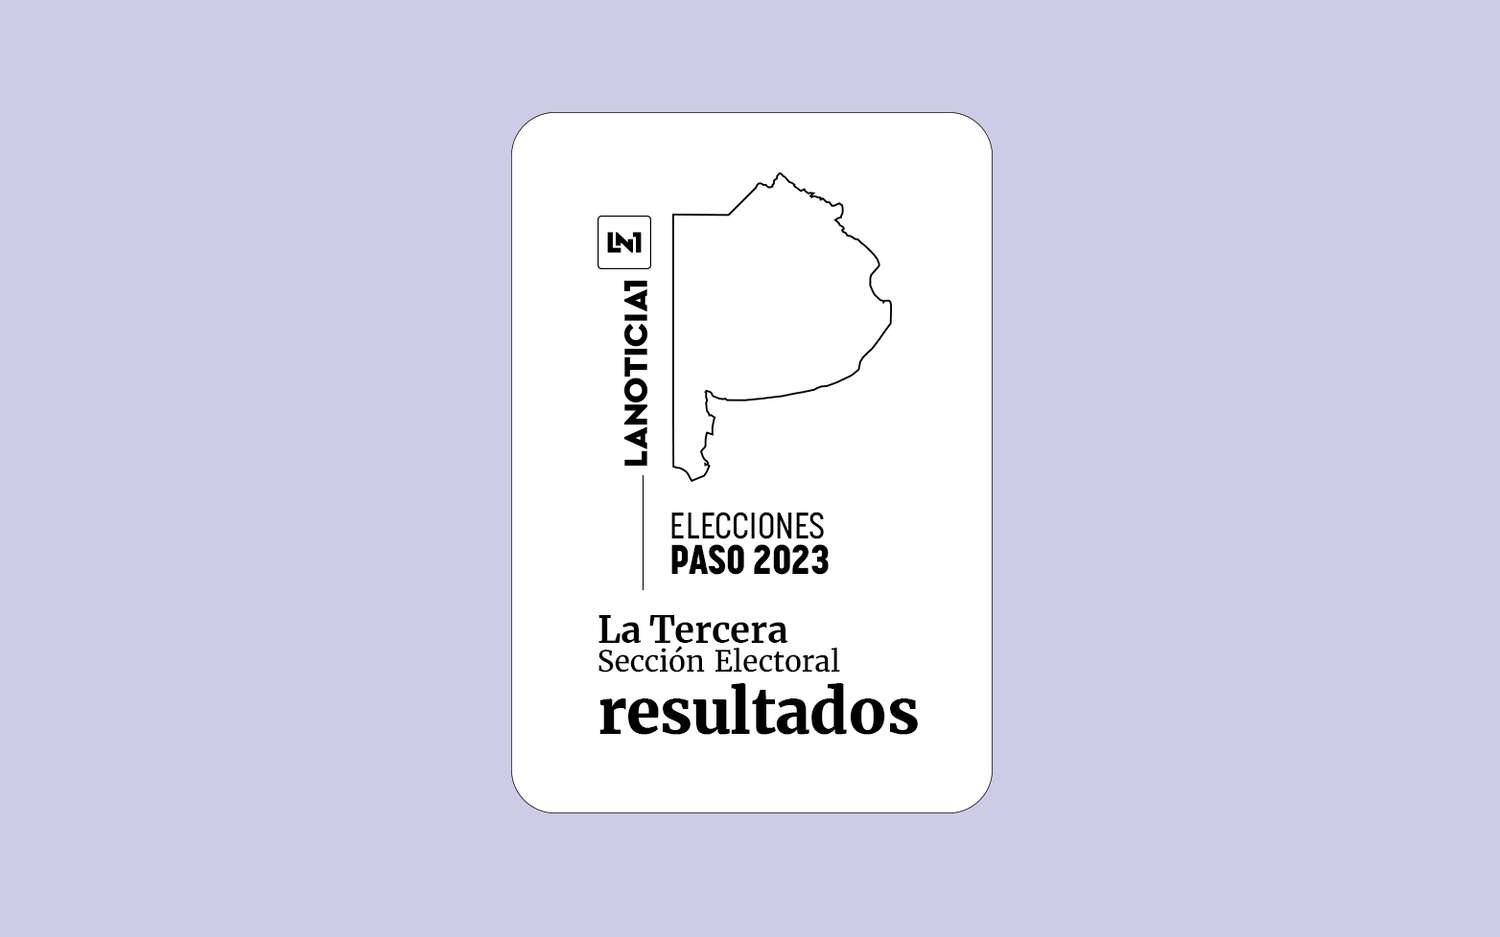 Elecciones PASO 2023: Resultados oficiales en la Tercera Sección Electoral